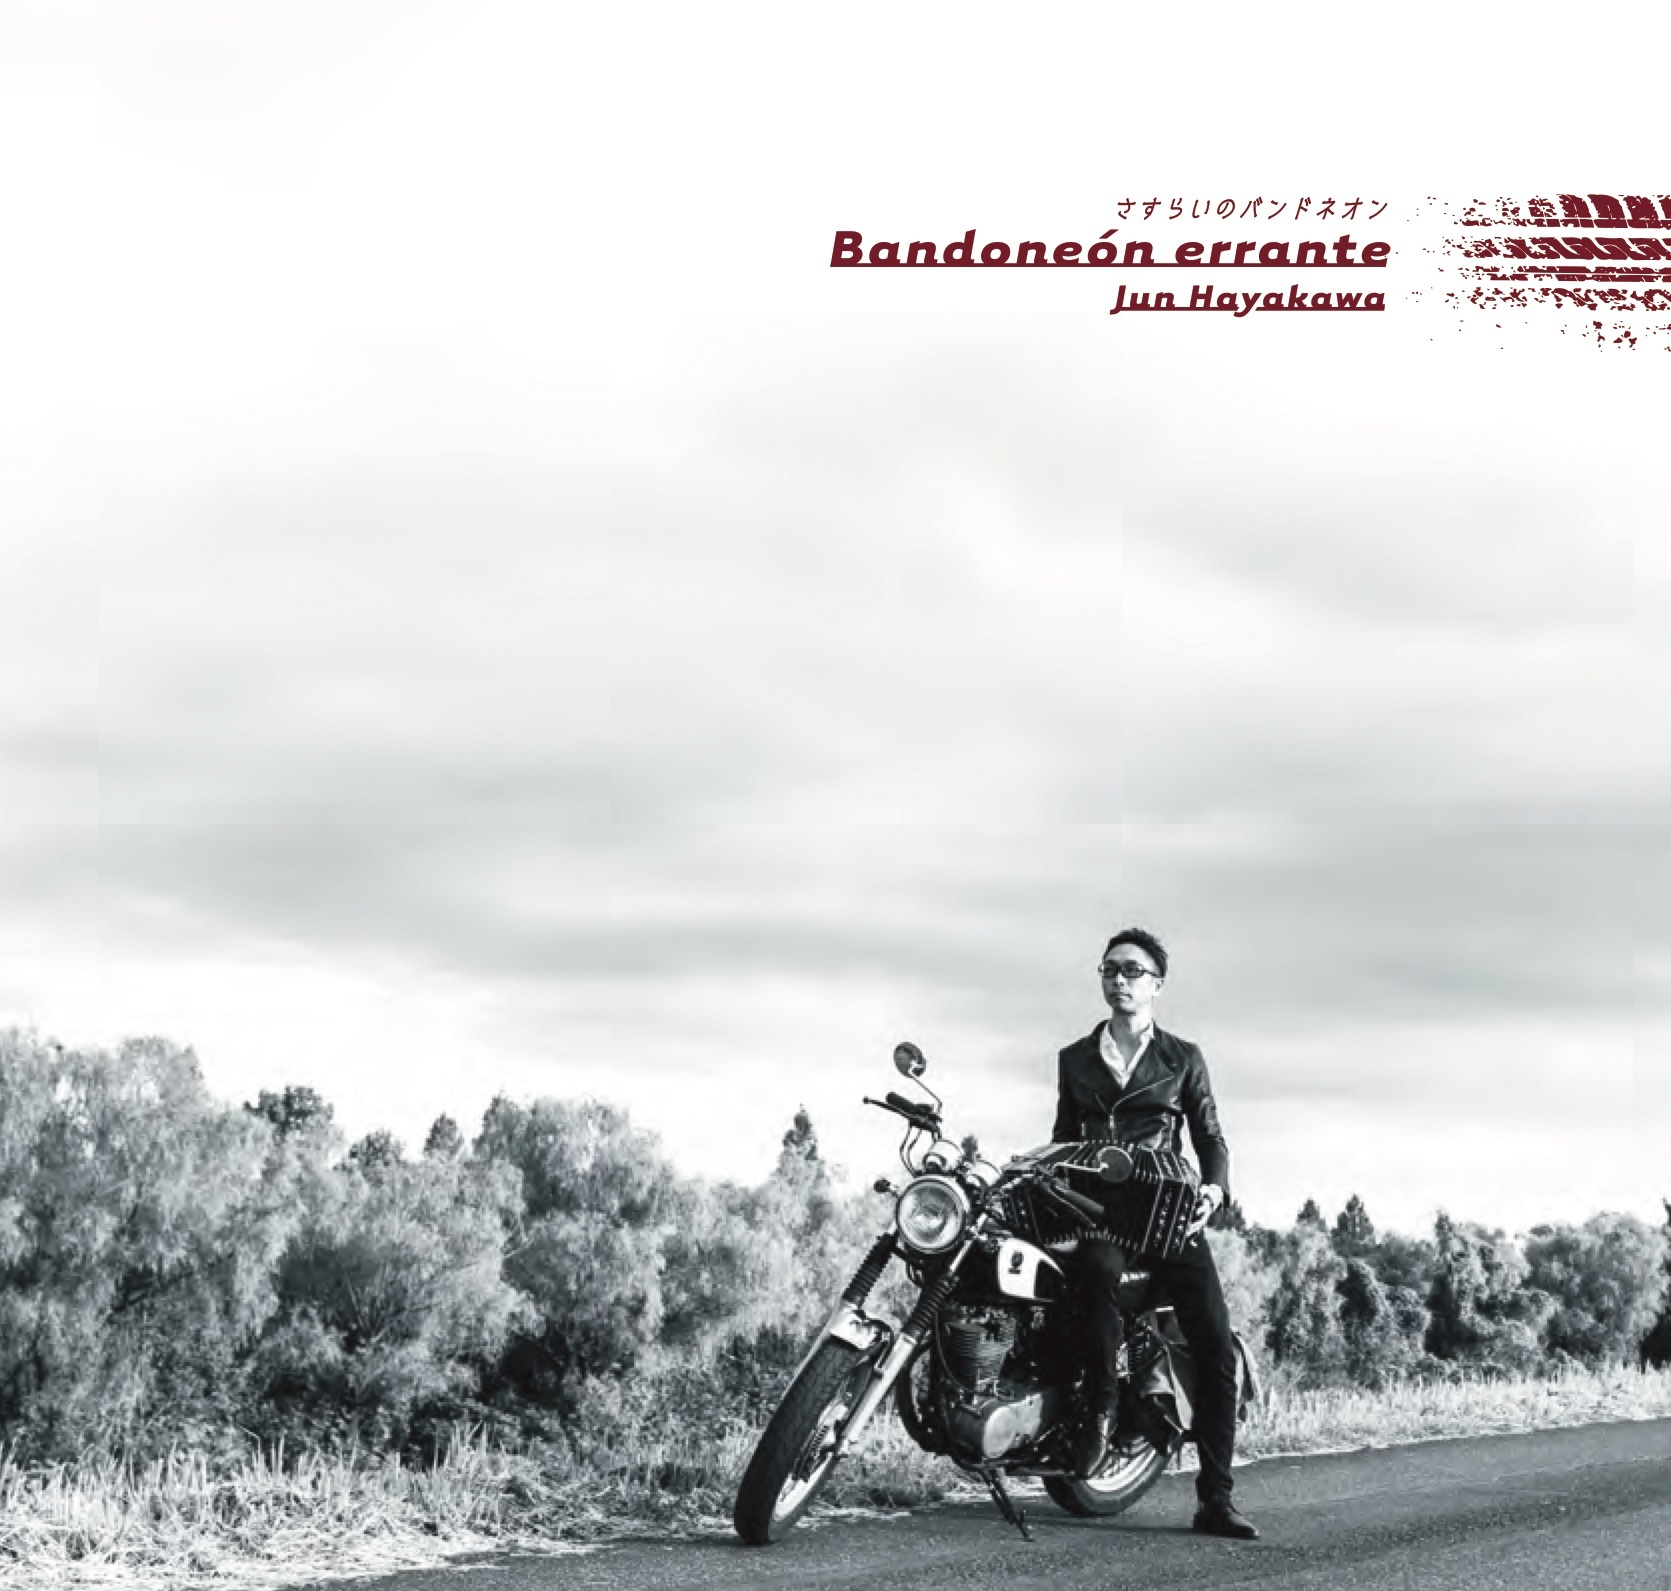 ヴィンテージバイクに跨り、
滅びゆく楽器を奏でる異色の演奏家・早川純　
伝統と革新が交差するバンドネオンソロ・アルバム
「Bandoneon errante ～さすらいのバンドネオン」リリース！